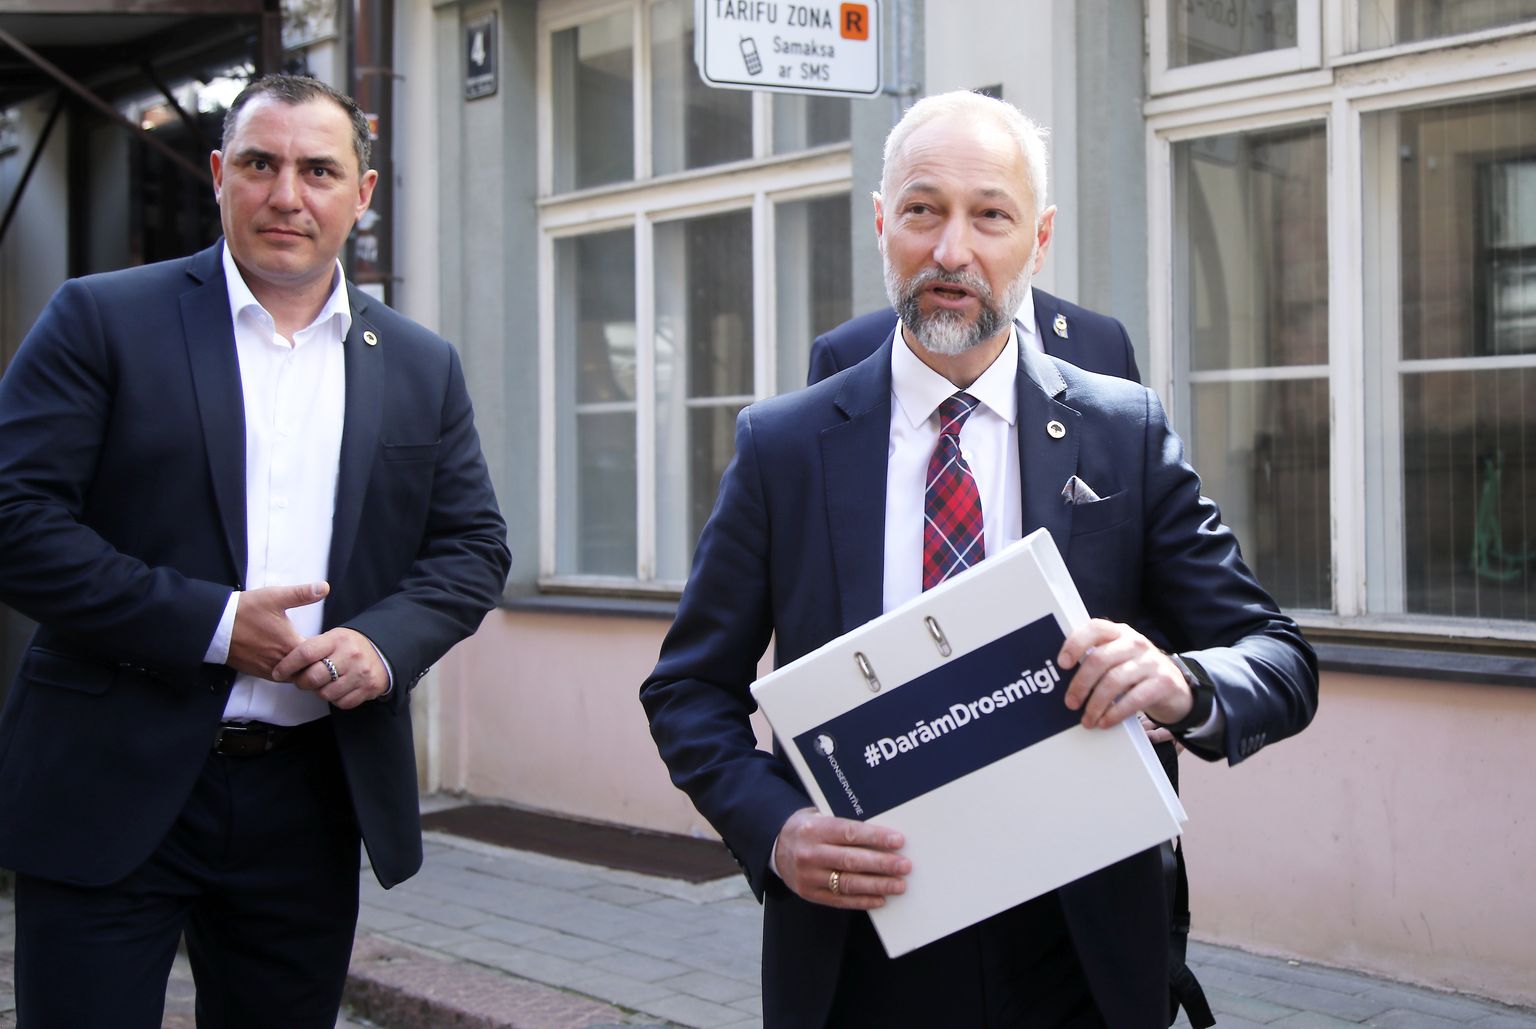 Partijas "Konservatīvie" pārstāvis Saeimas deputāts Sandis Riekstiņš un tieslietu ministrs Jānis Bordāns